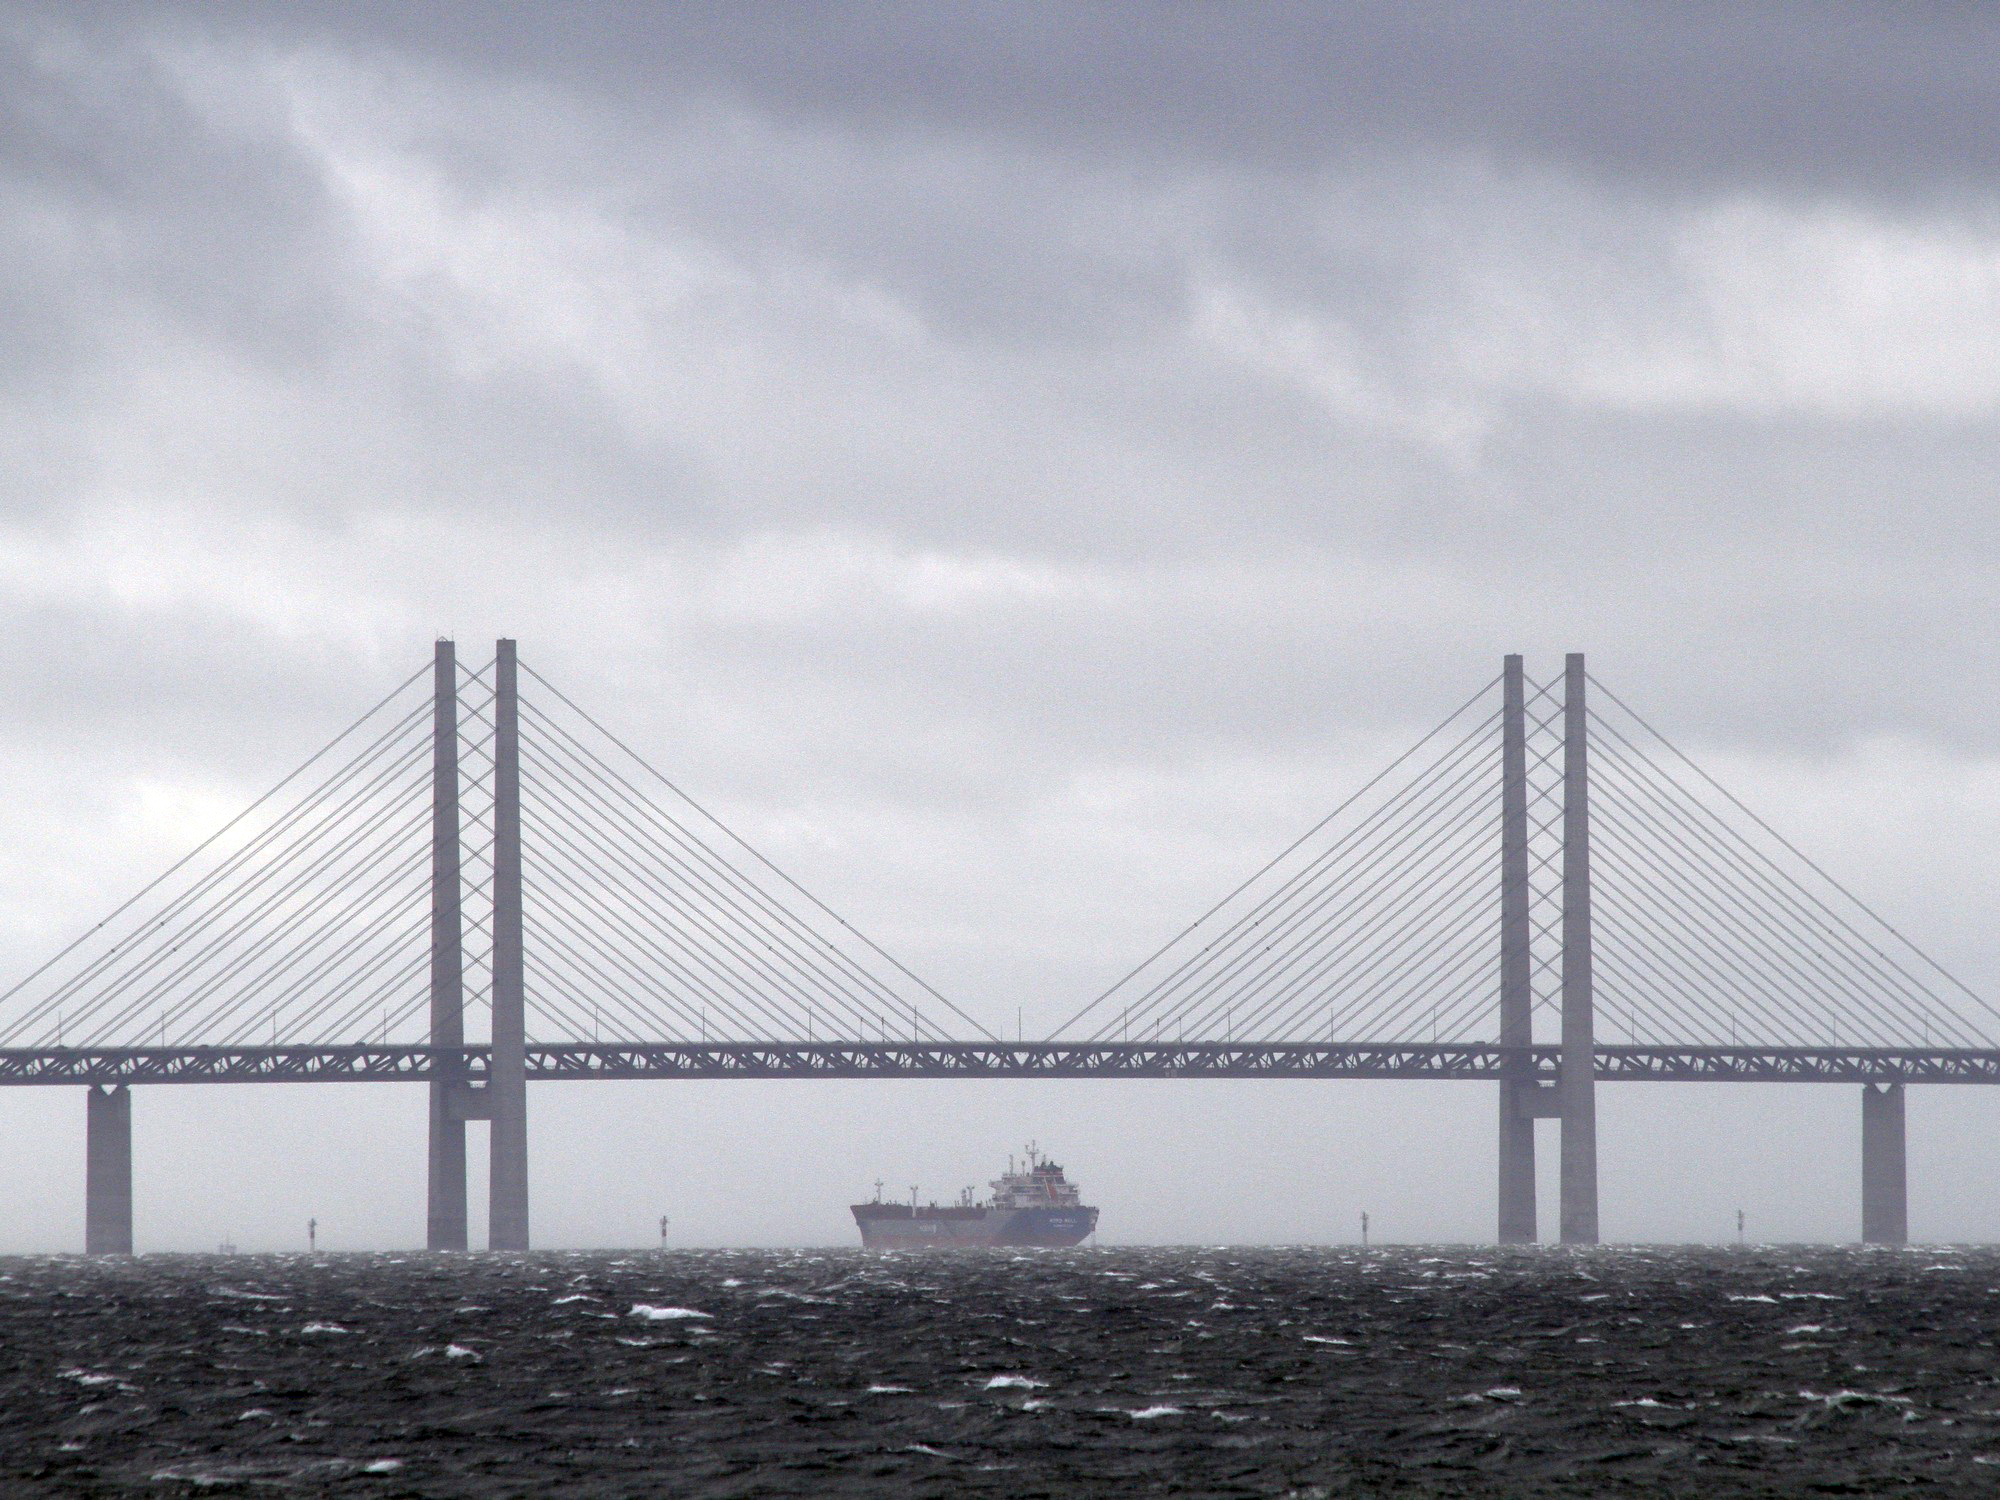 Øresundsbroen / Öresundsbron